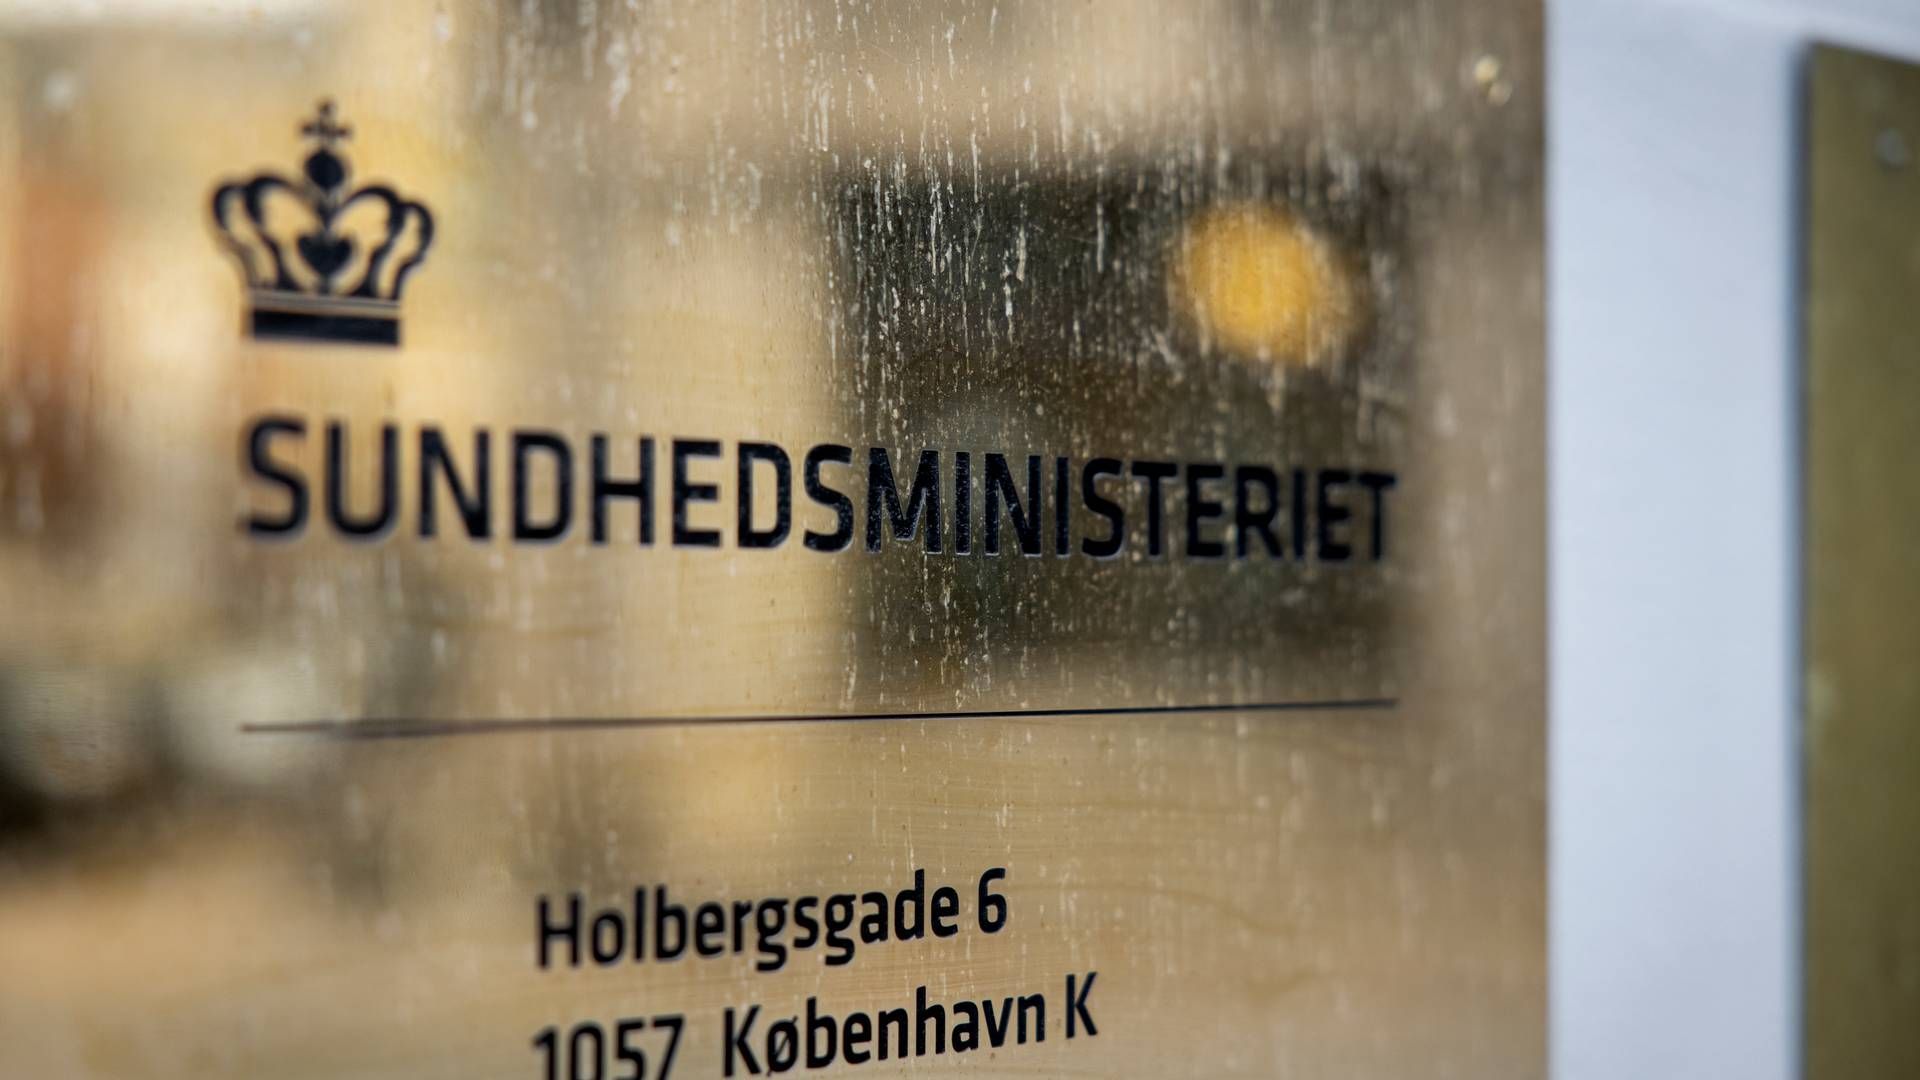 Rådgiveren afløser Magnus Ulveman, der efter få måneders ansættelse i april annoncerede, at han havde besluttet at stoppe i ministerens team af særlige rådgivere. | Foto: Jesper Houborg/Ritzau Scanpix